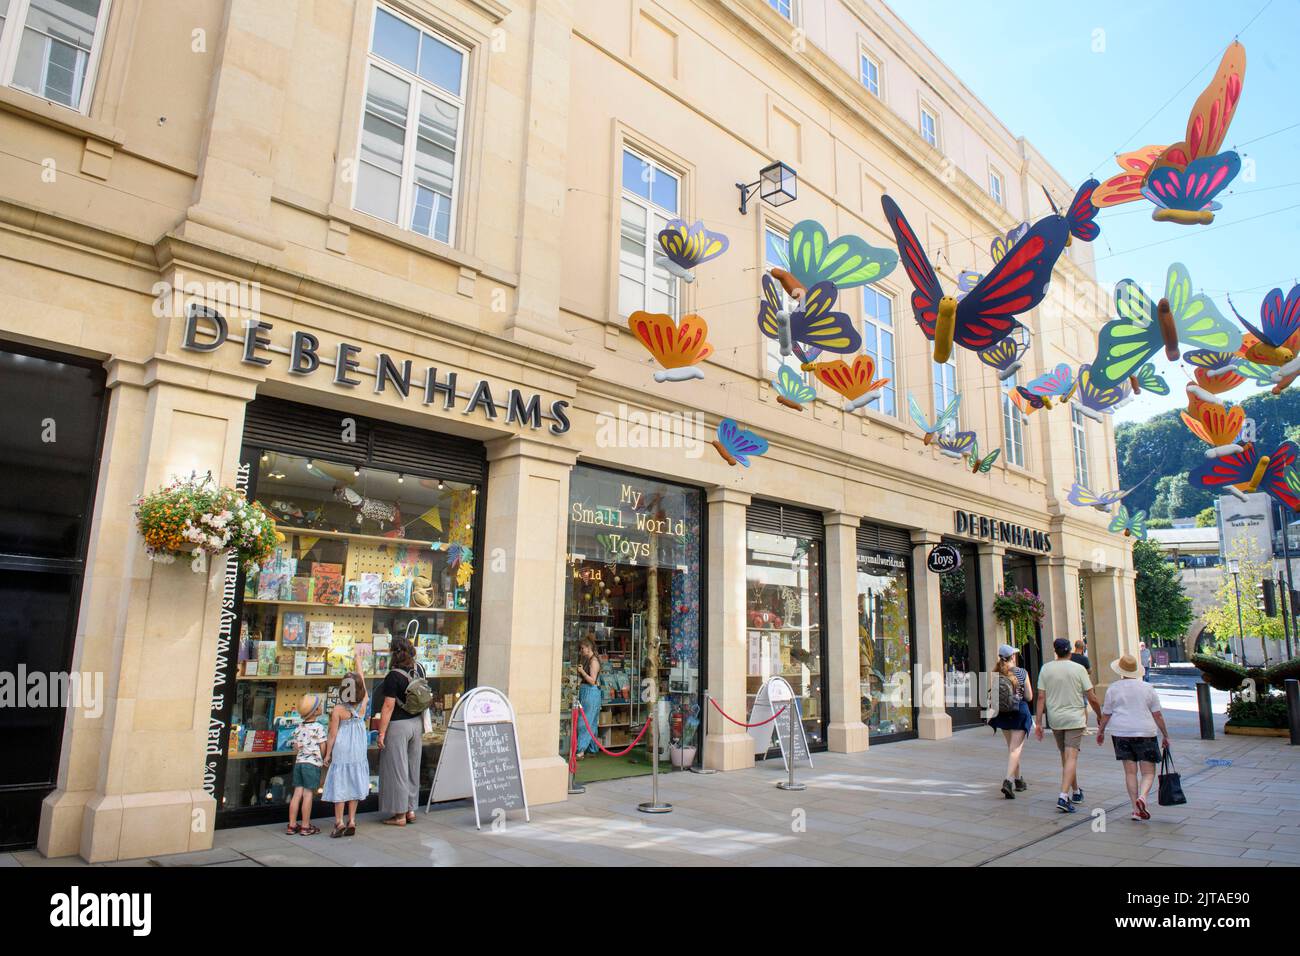 Le grand magasin Debenhams, maintenant fermé, entourant la boutique de jouets My Small World de la rue Saint-Laurent, à Bath Banque D'Images